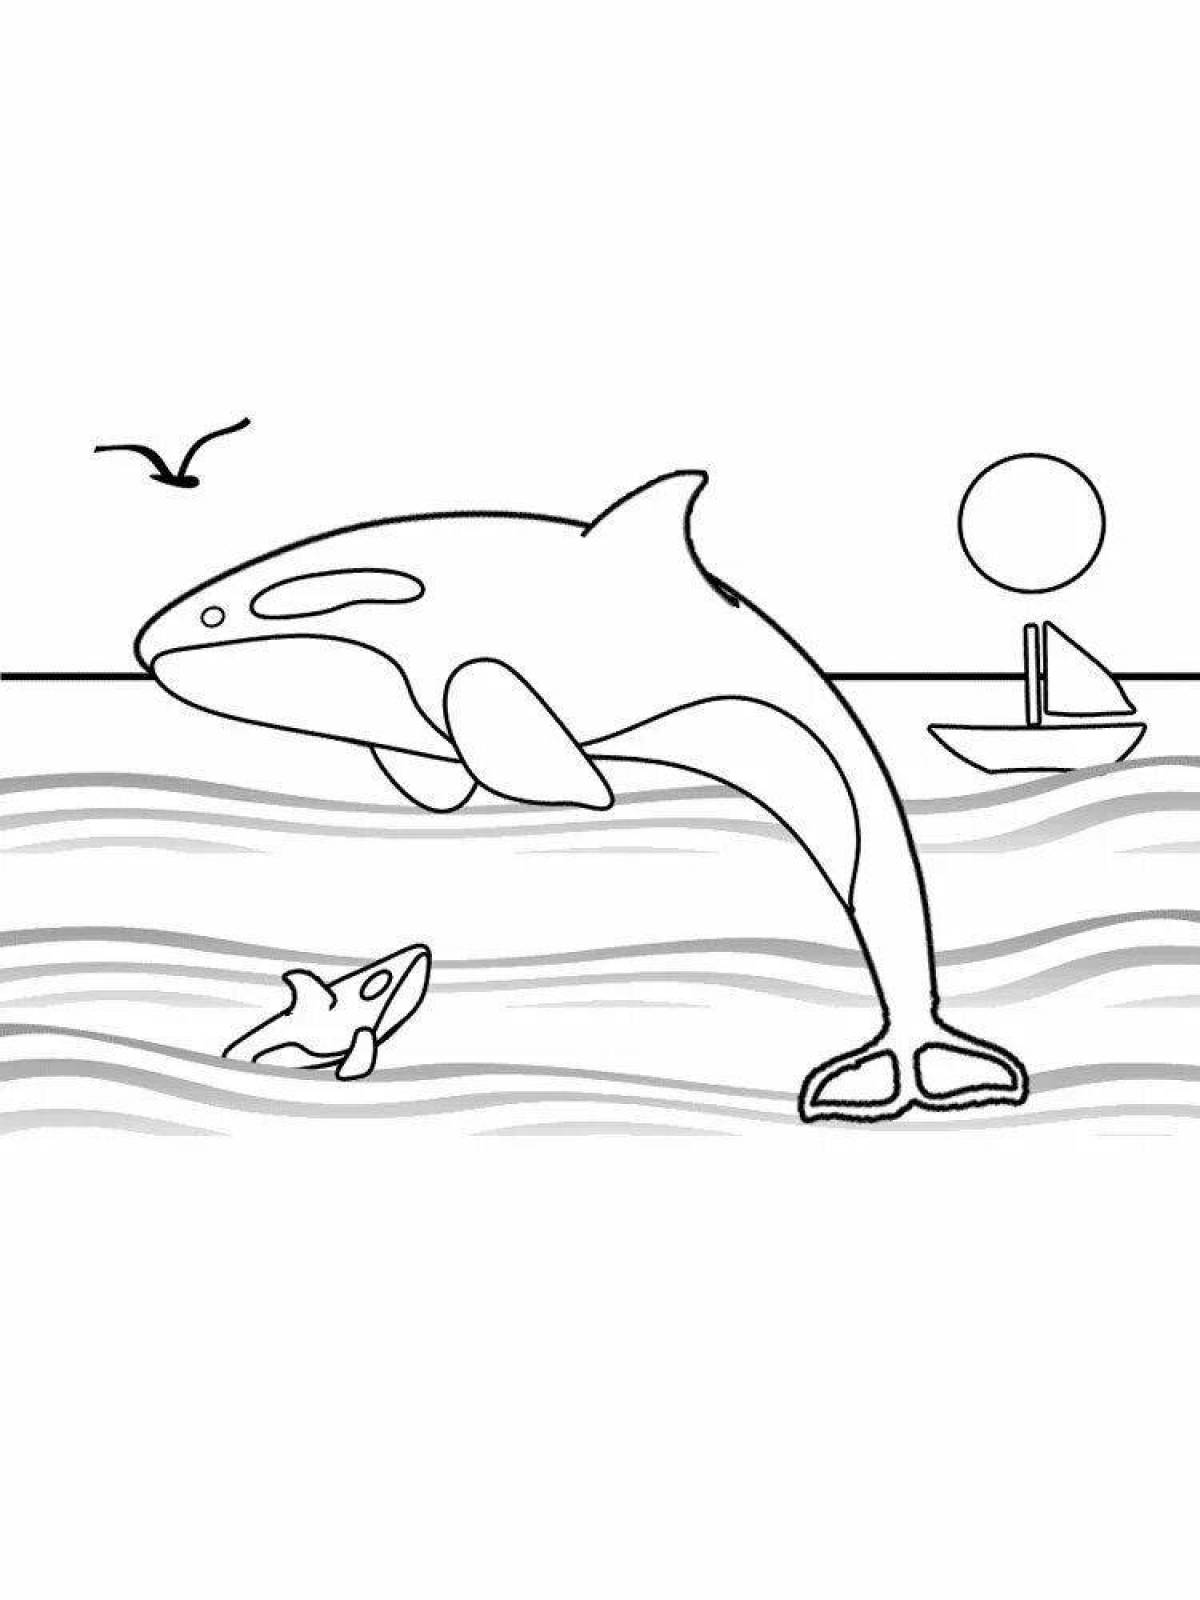 Adorable killer whale coloring book